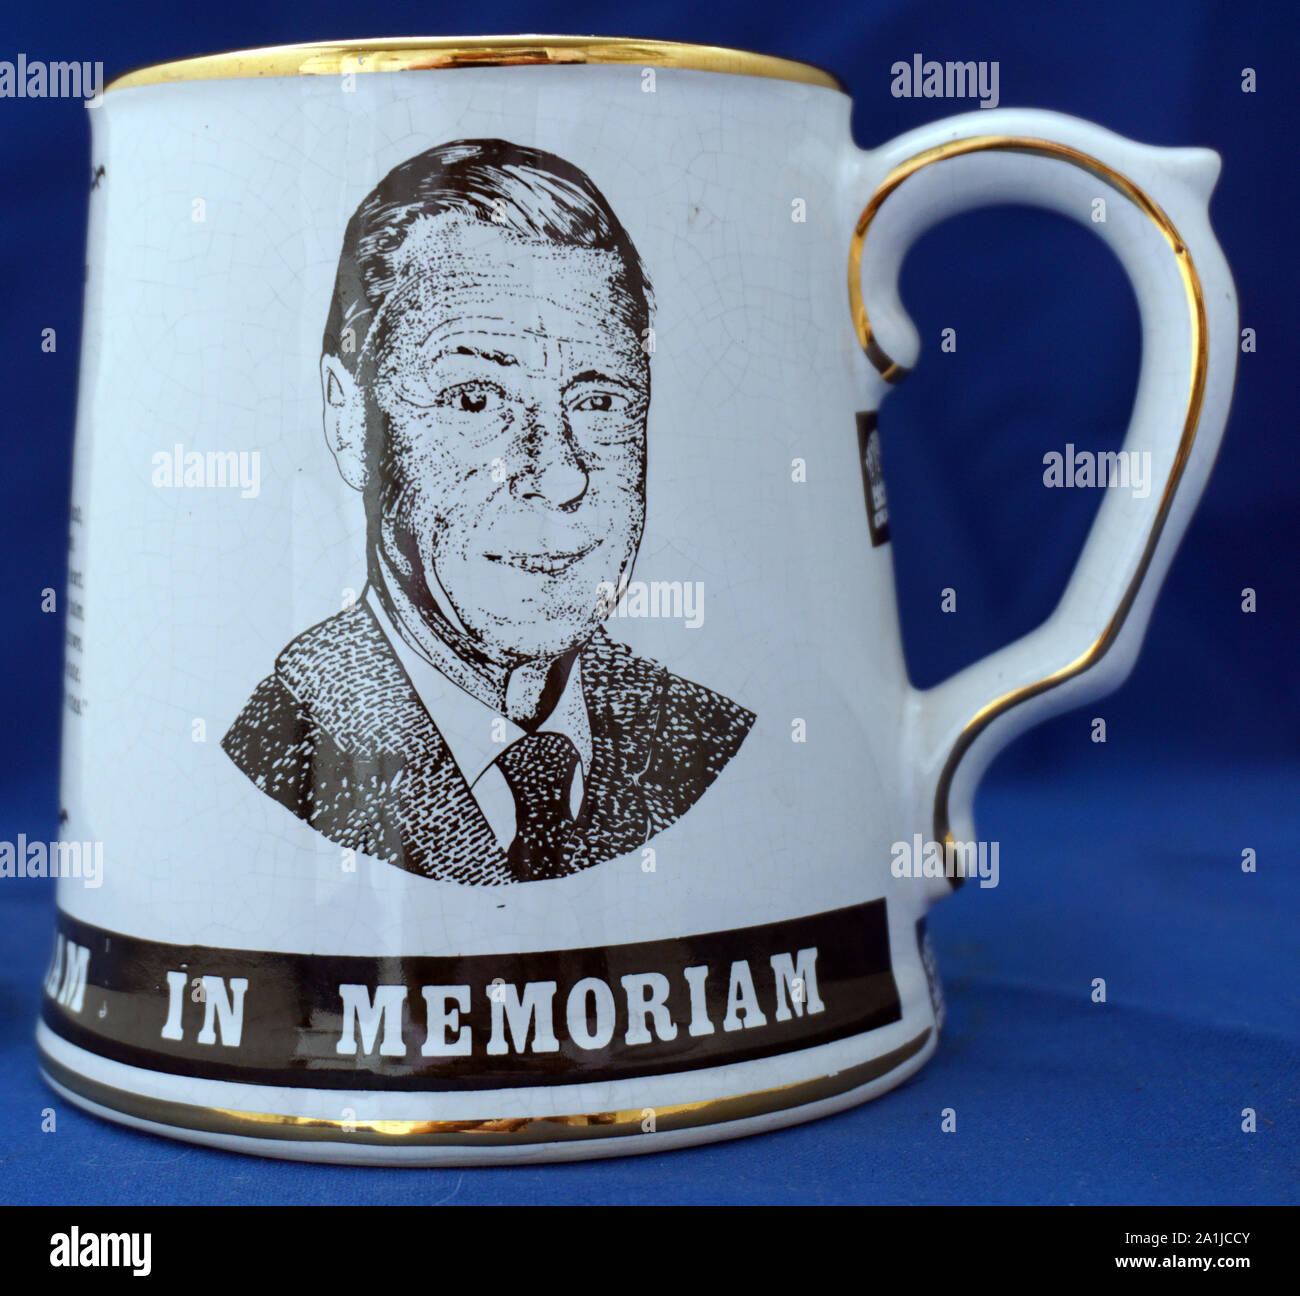 King Edward VIII In Memoriam Commemorative Mug Stock Photo